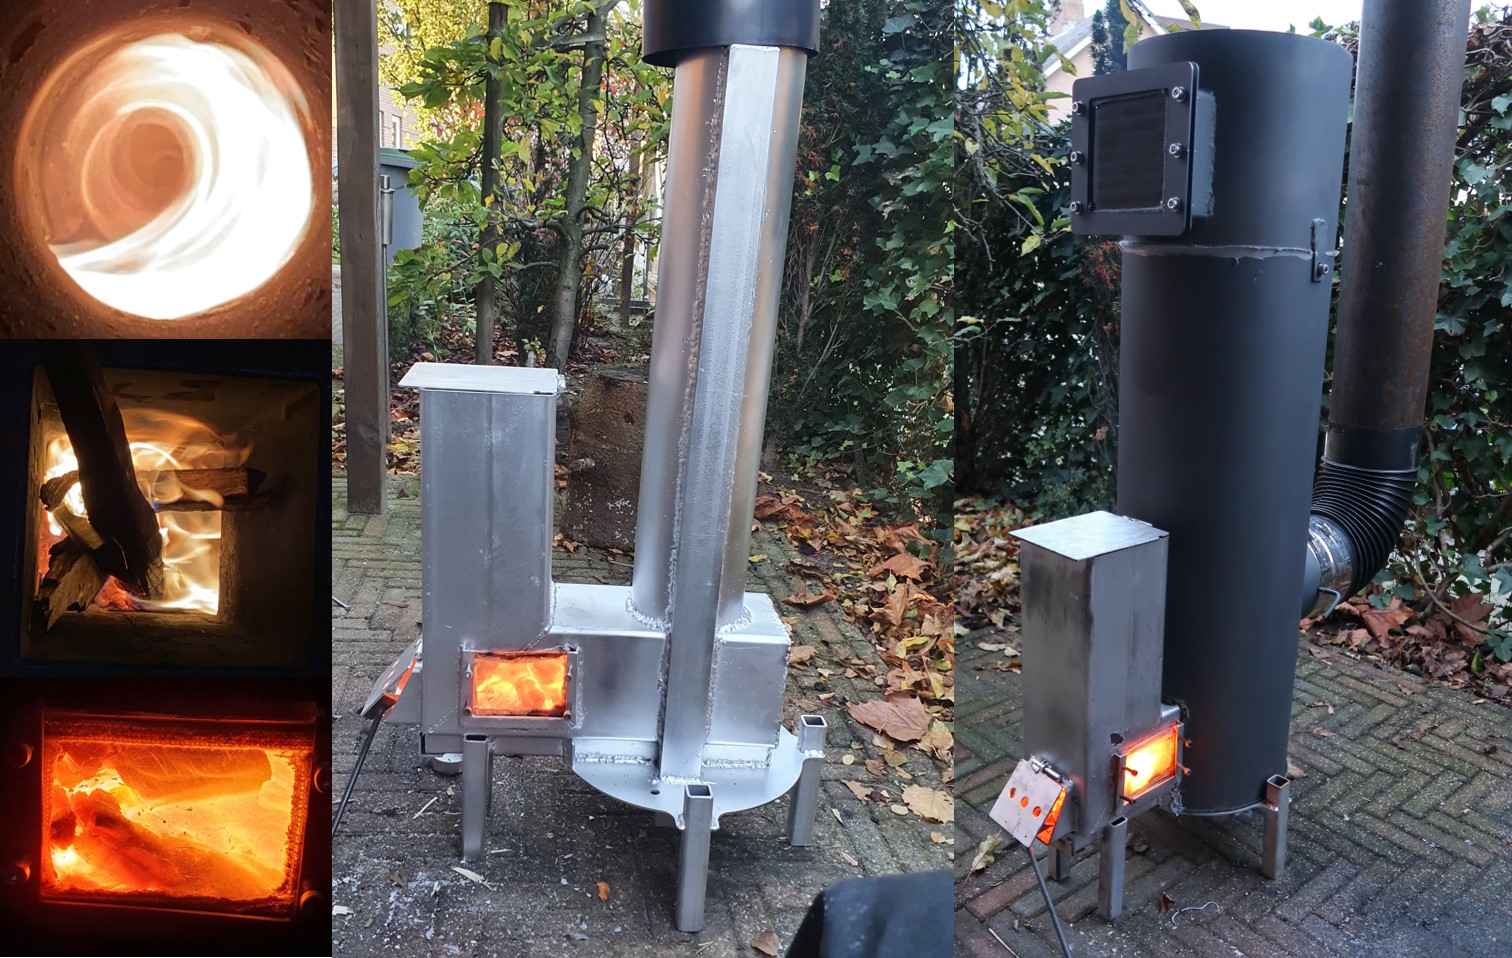 Vortex rocket stove heater